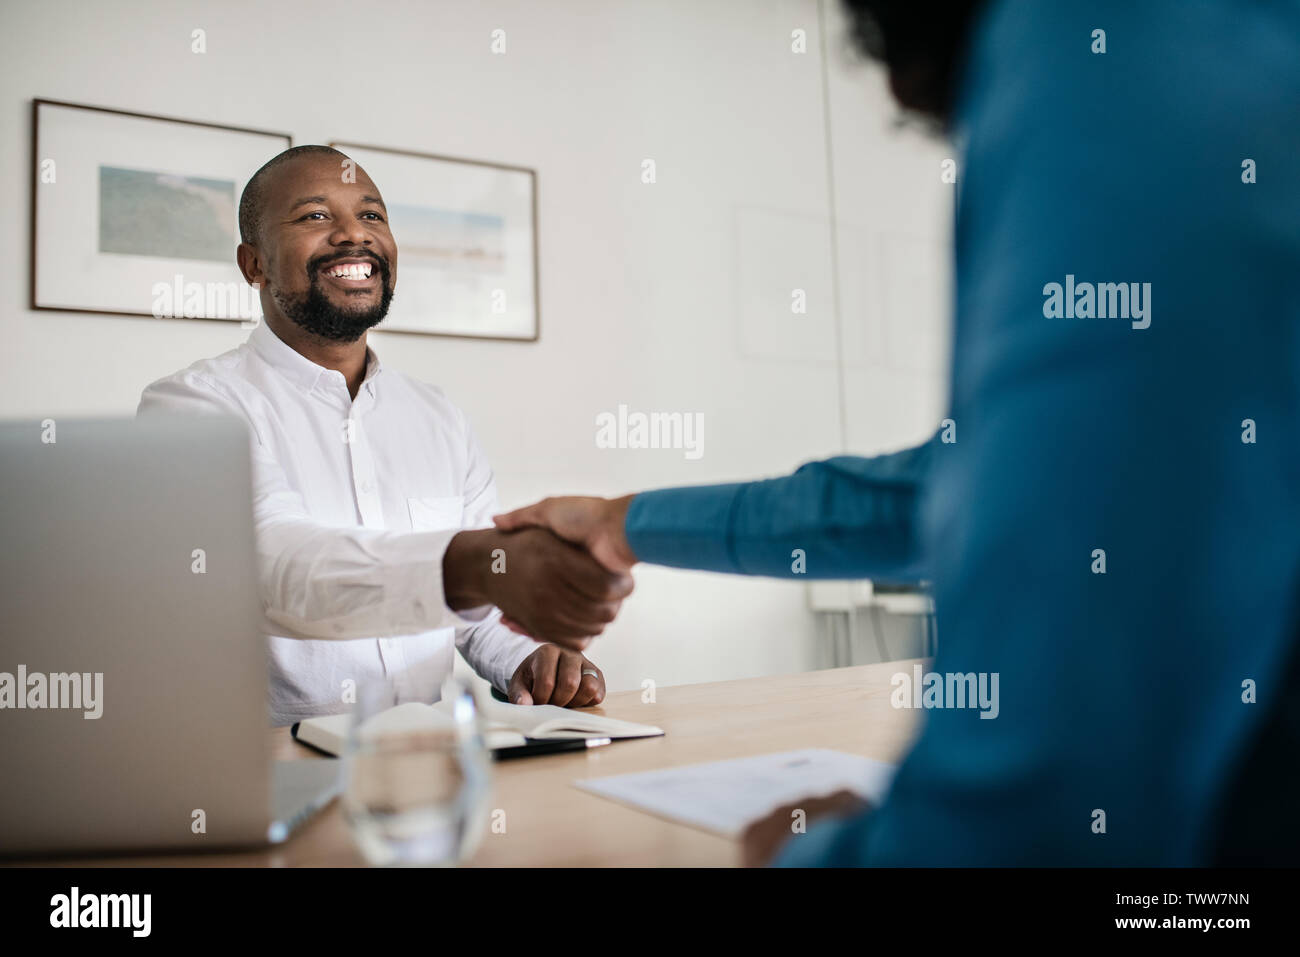 Smiling office manager en serrant la main d'un nouvel employé Banque D'Images